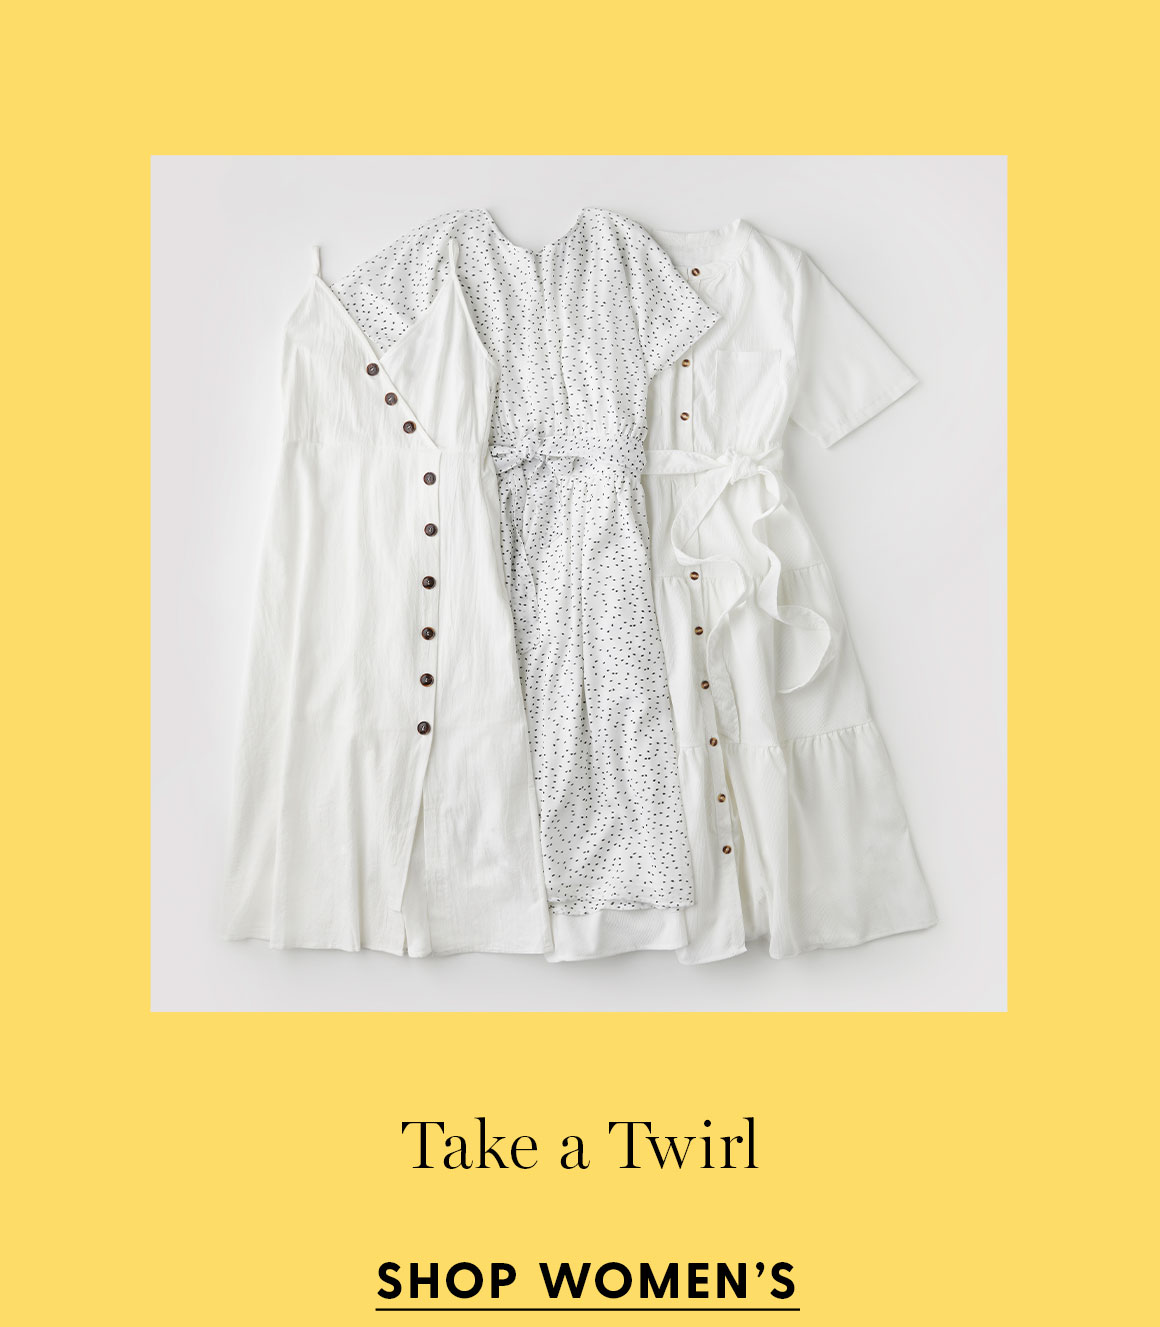 Take a Twirl. Shop women's.